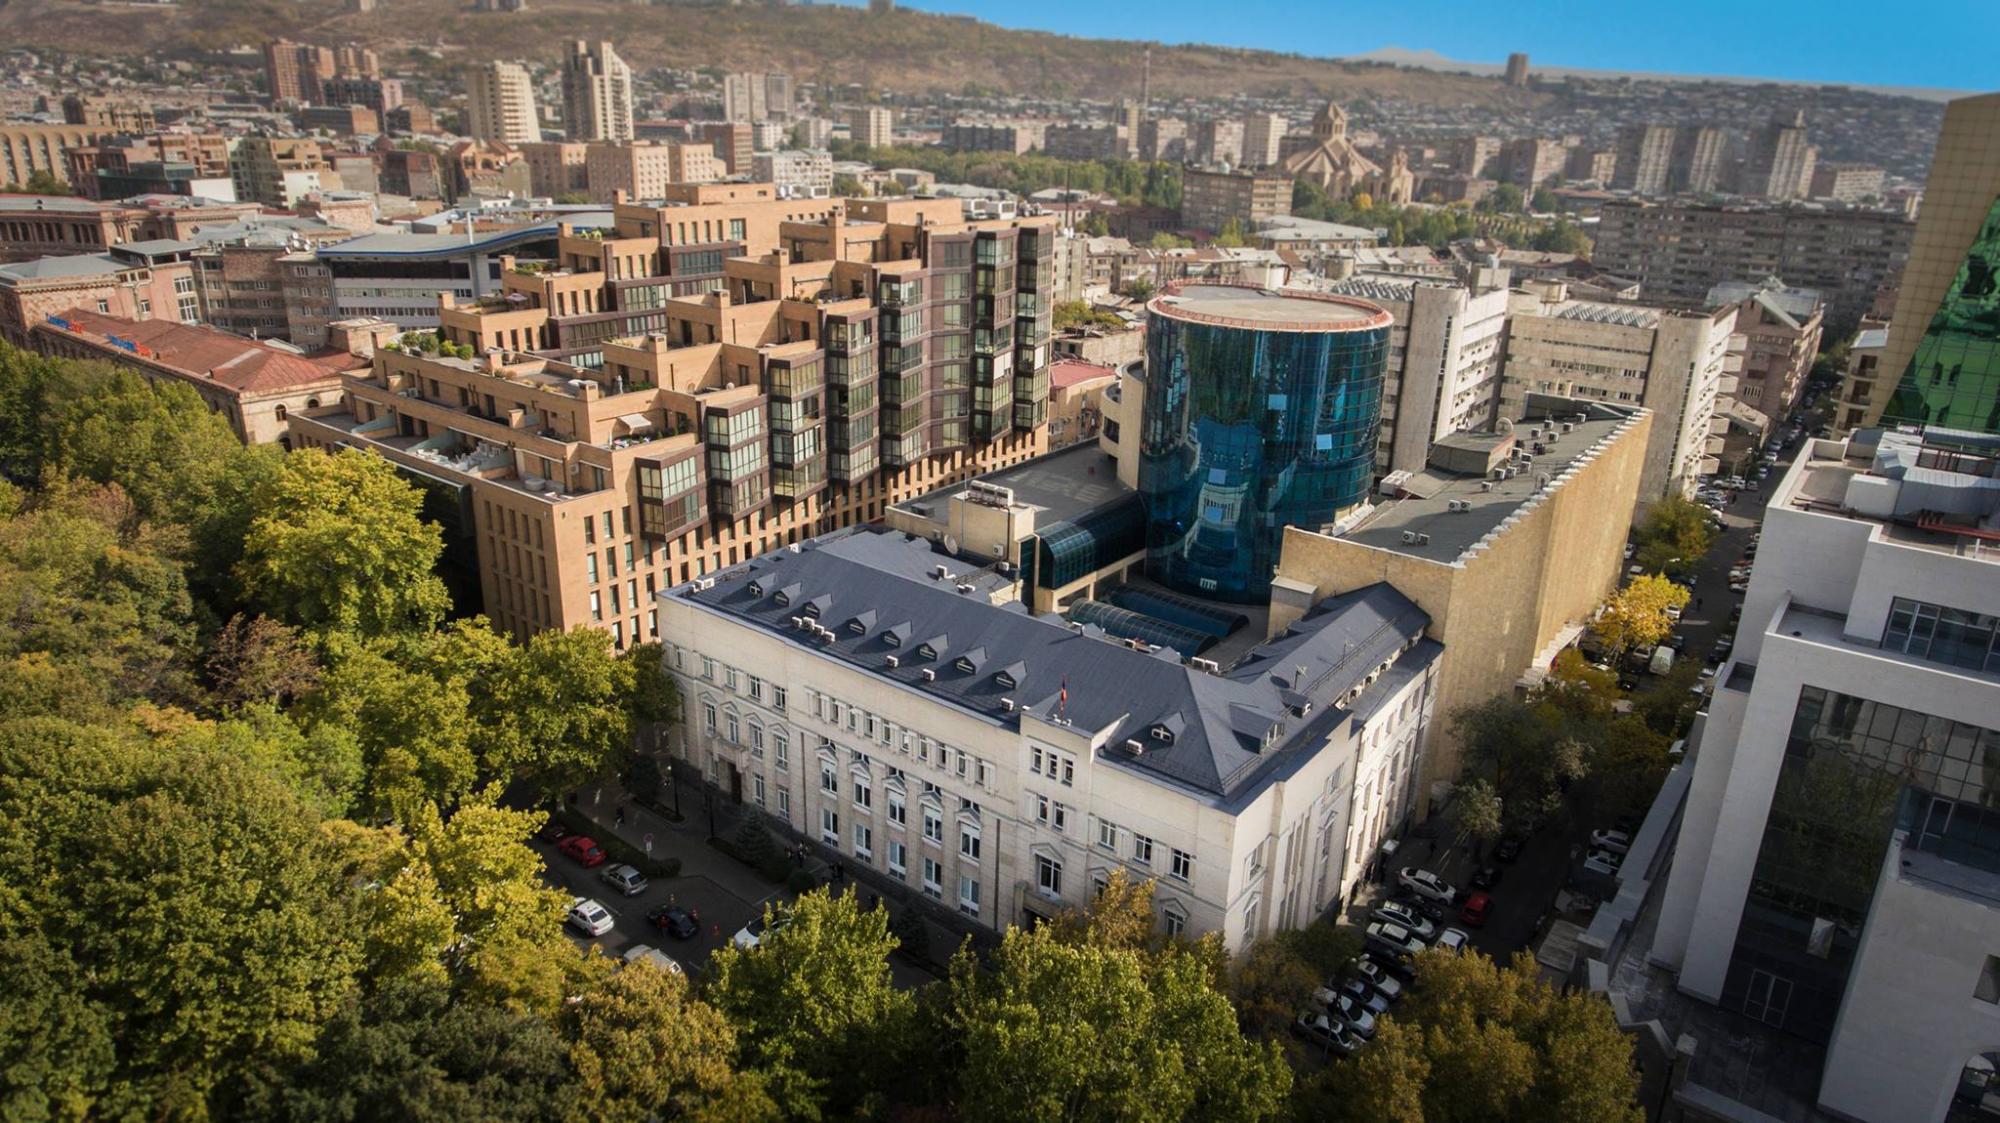 Կենտրոնական բանկը Հայաստանում 4 տոկոս տնտեսական անկում է կանխատեսում 2020-ին